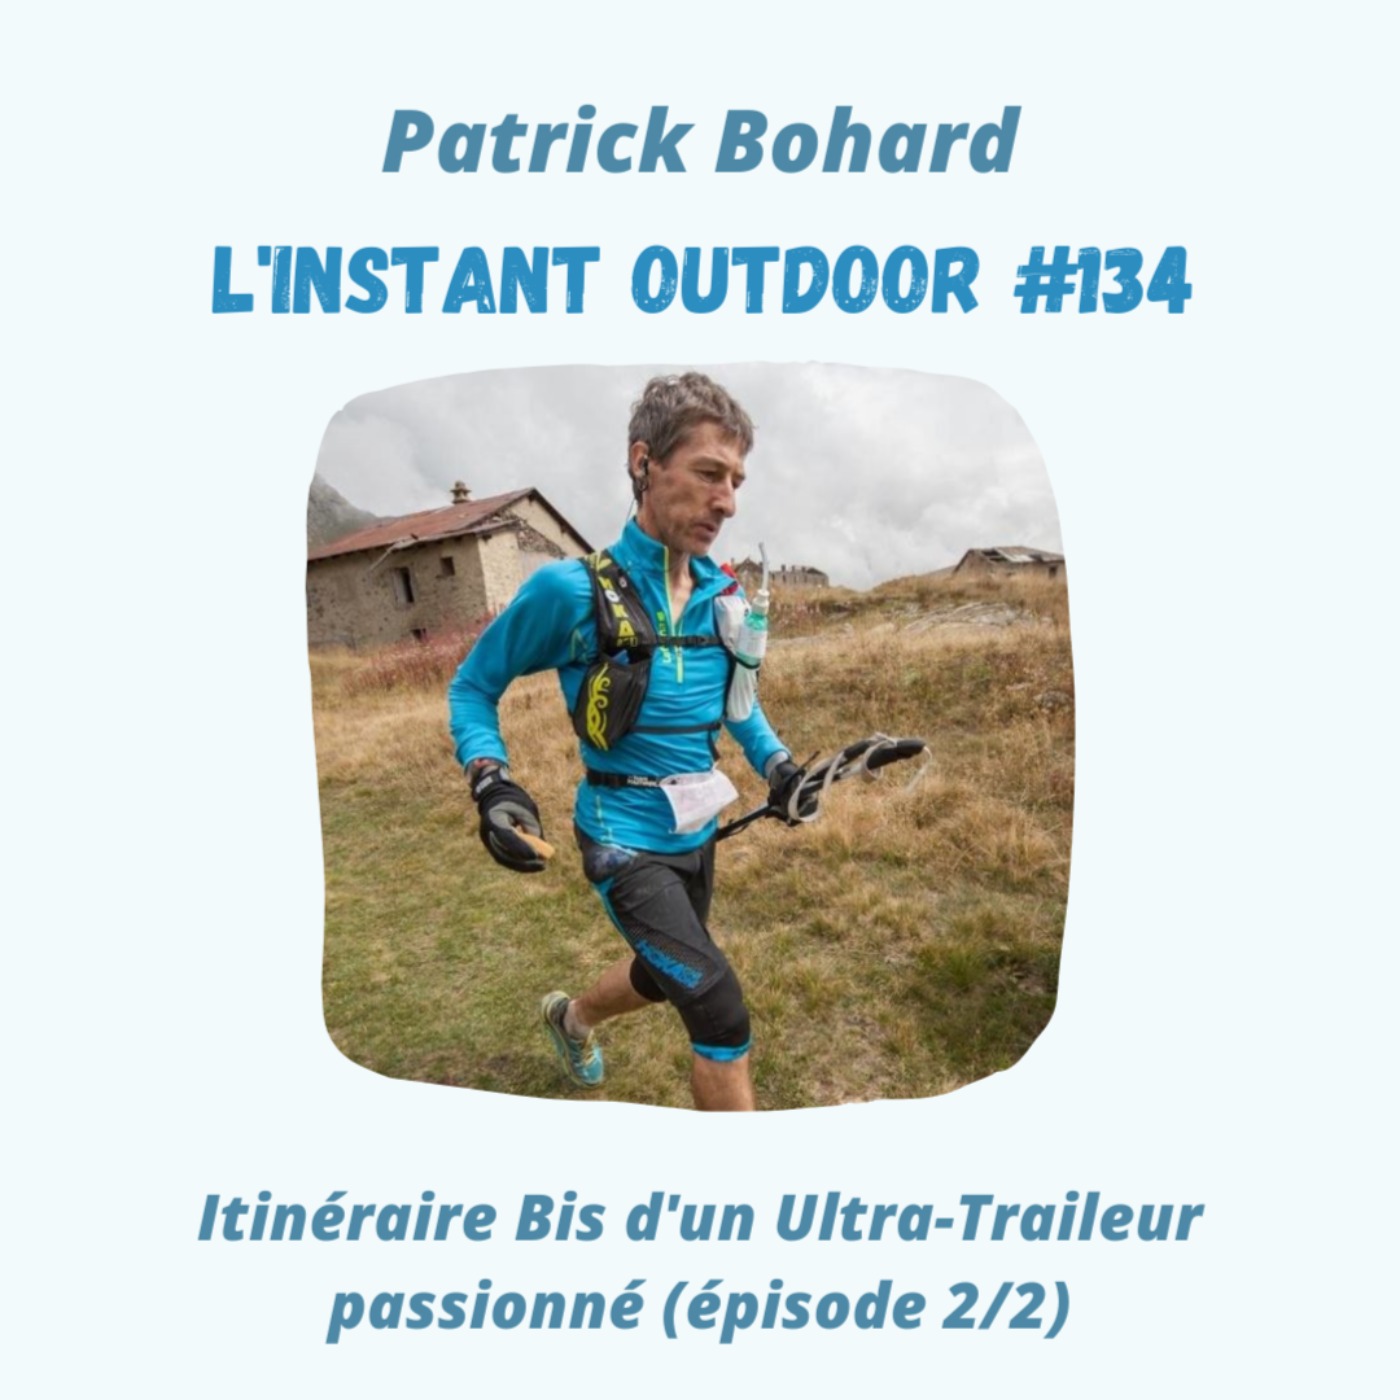 Patrick Bohard - Itinéraire Bis d'un Ultra-Traileur passionné (partie 2/2)